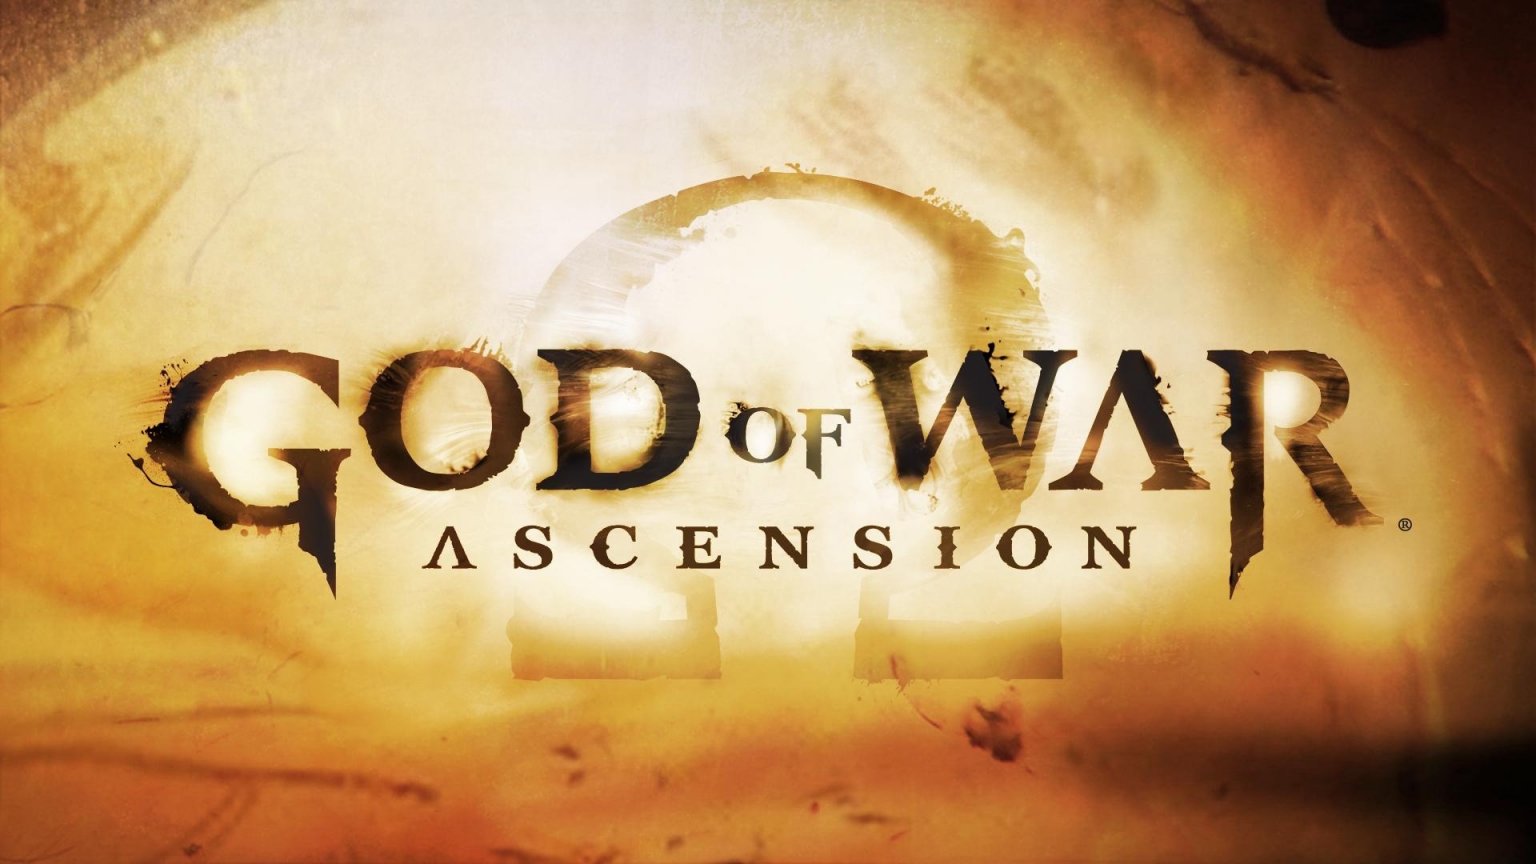 God of War Ascension for 1536 x 864 HDTV resolution